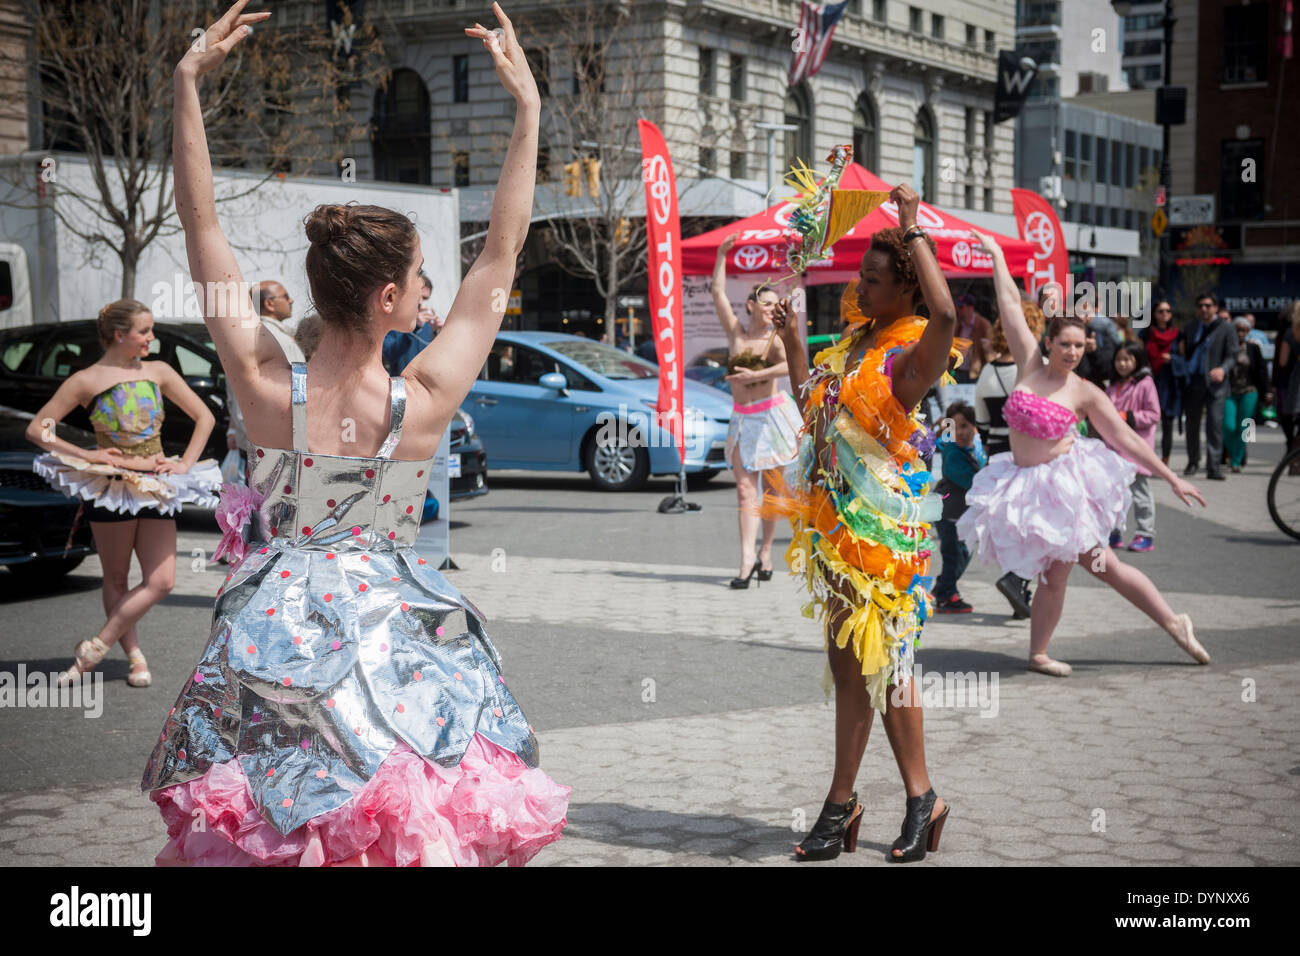 Bailarines vestidos en trajes de material reciclado realice en Union Square, en Nueva York, durante la feria de Nueva York el día de la tierra Fotografía de Alamy